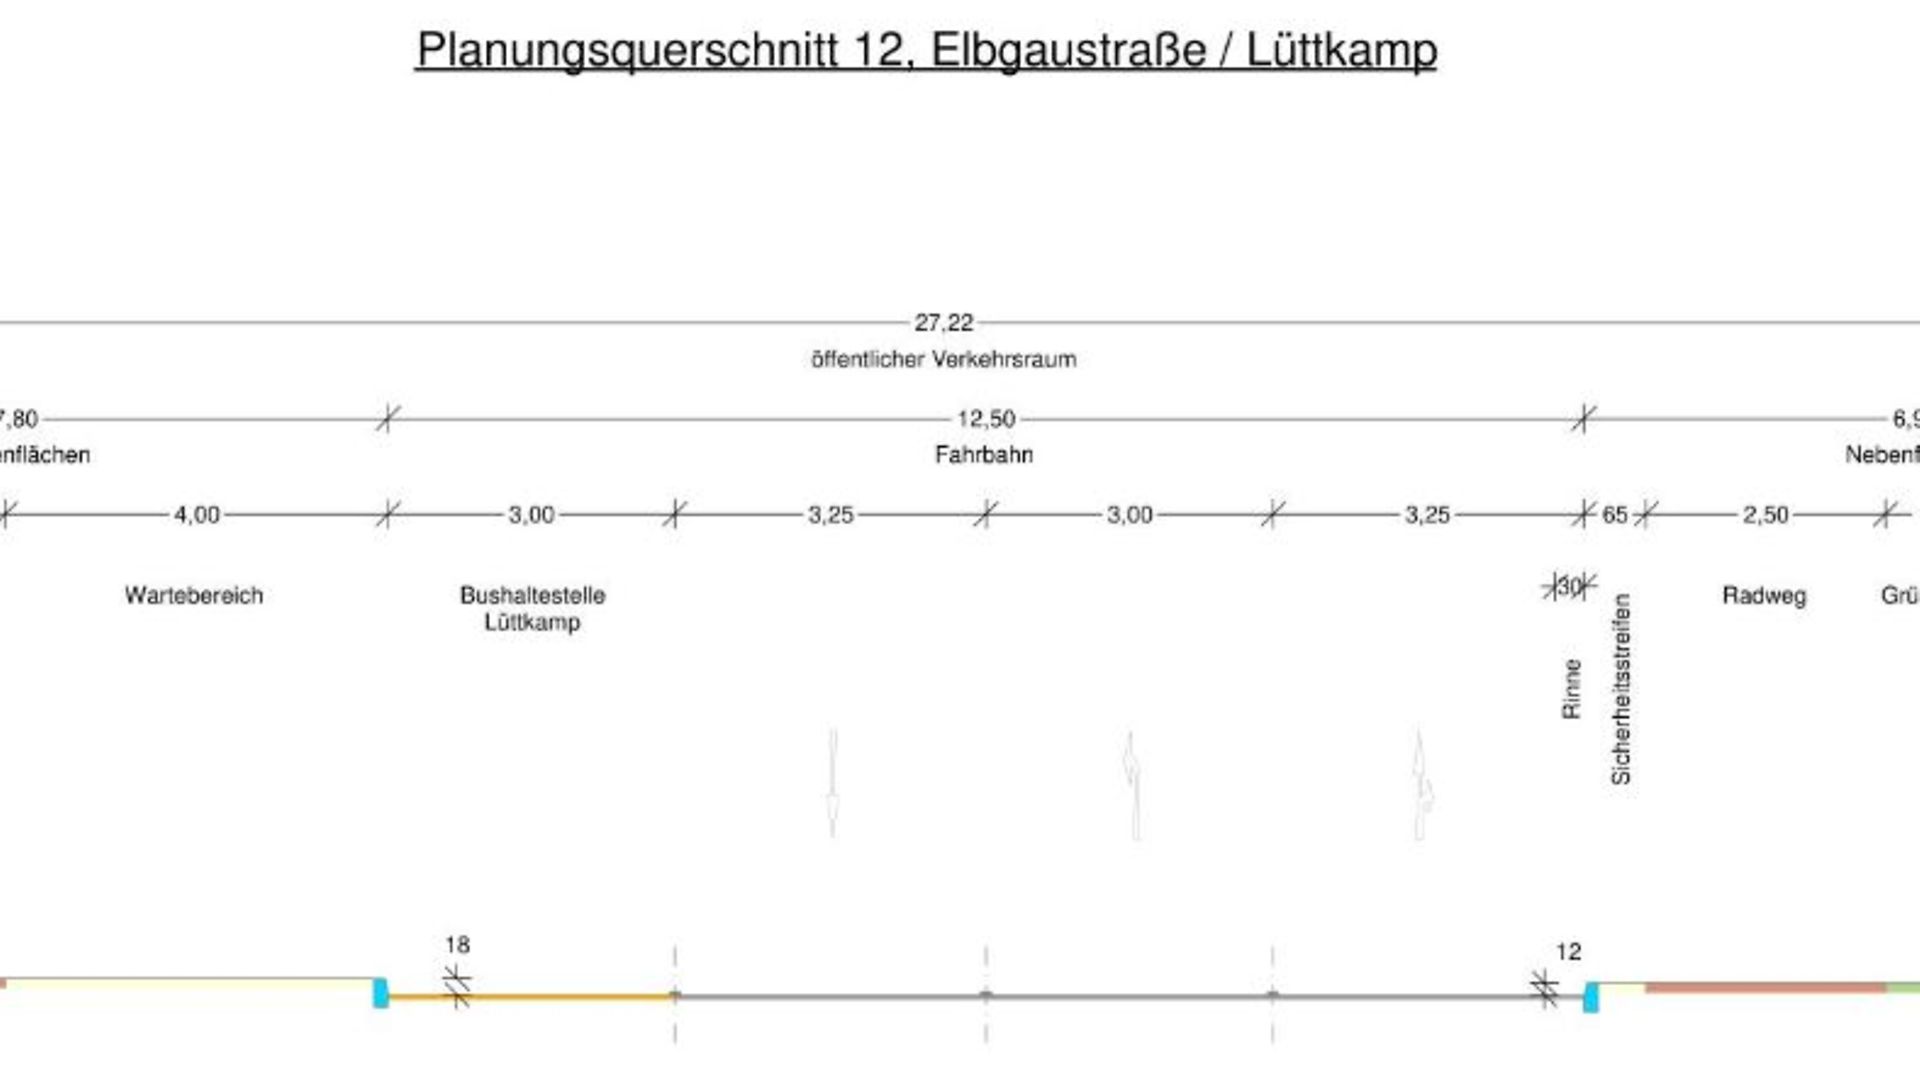 Technische Zeichnung (wünschen Sie ein Erklärung des Planausschnitts, wenden Sie sich gern an lsbgkommunikation@lsbg.hamburg.de)